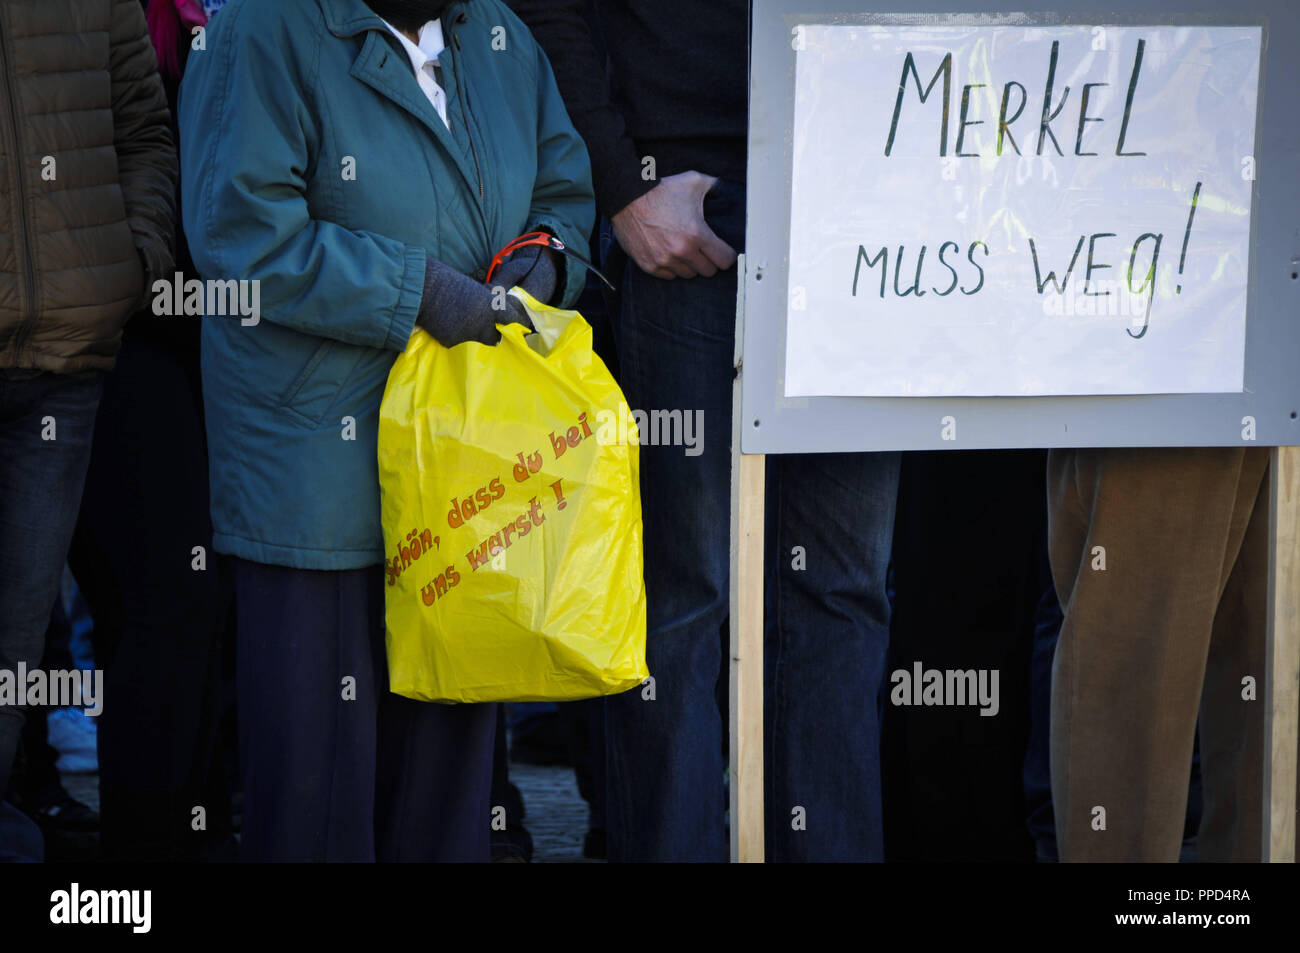 Alemanes rusos se reúnen en la plaza del pueblo de Traunreut para manifestarse en contra de las políticas de refugiados de Angela Merkel, el Islam y la supuesta mentira de prensa. En la foto se puede ver el lema "Niza que estaban con nosotros' en una bolsa de compras, junto a los banners con la demanda 'Merkel debe ir". Foto de stock